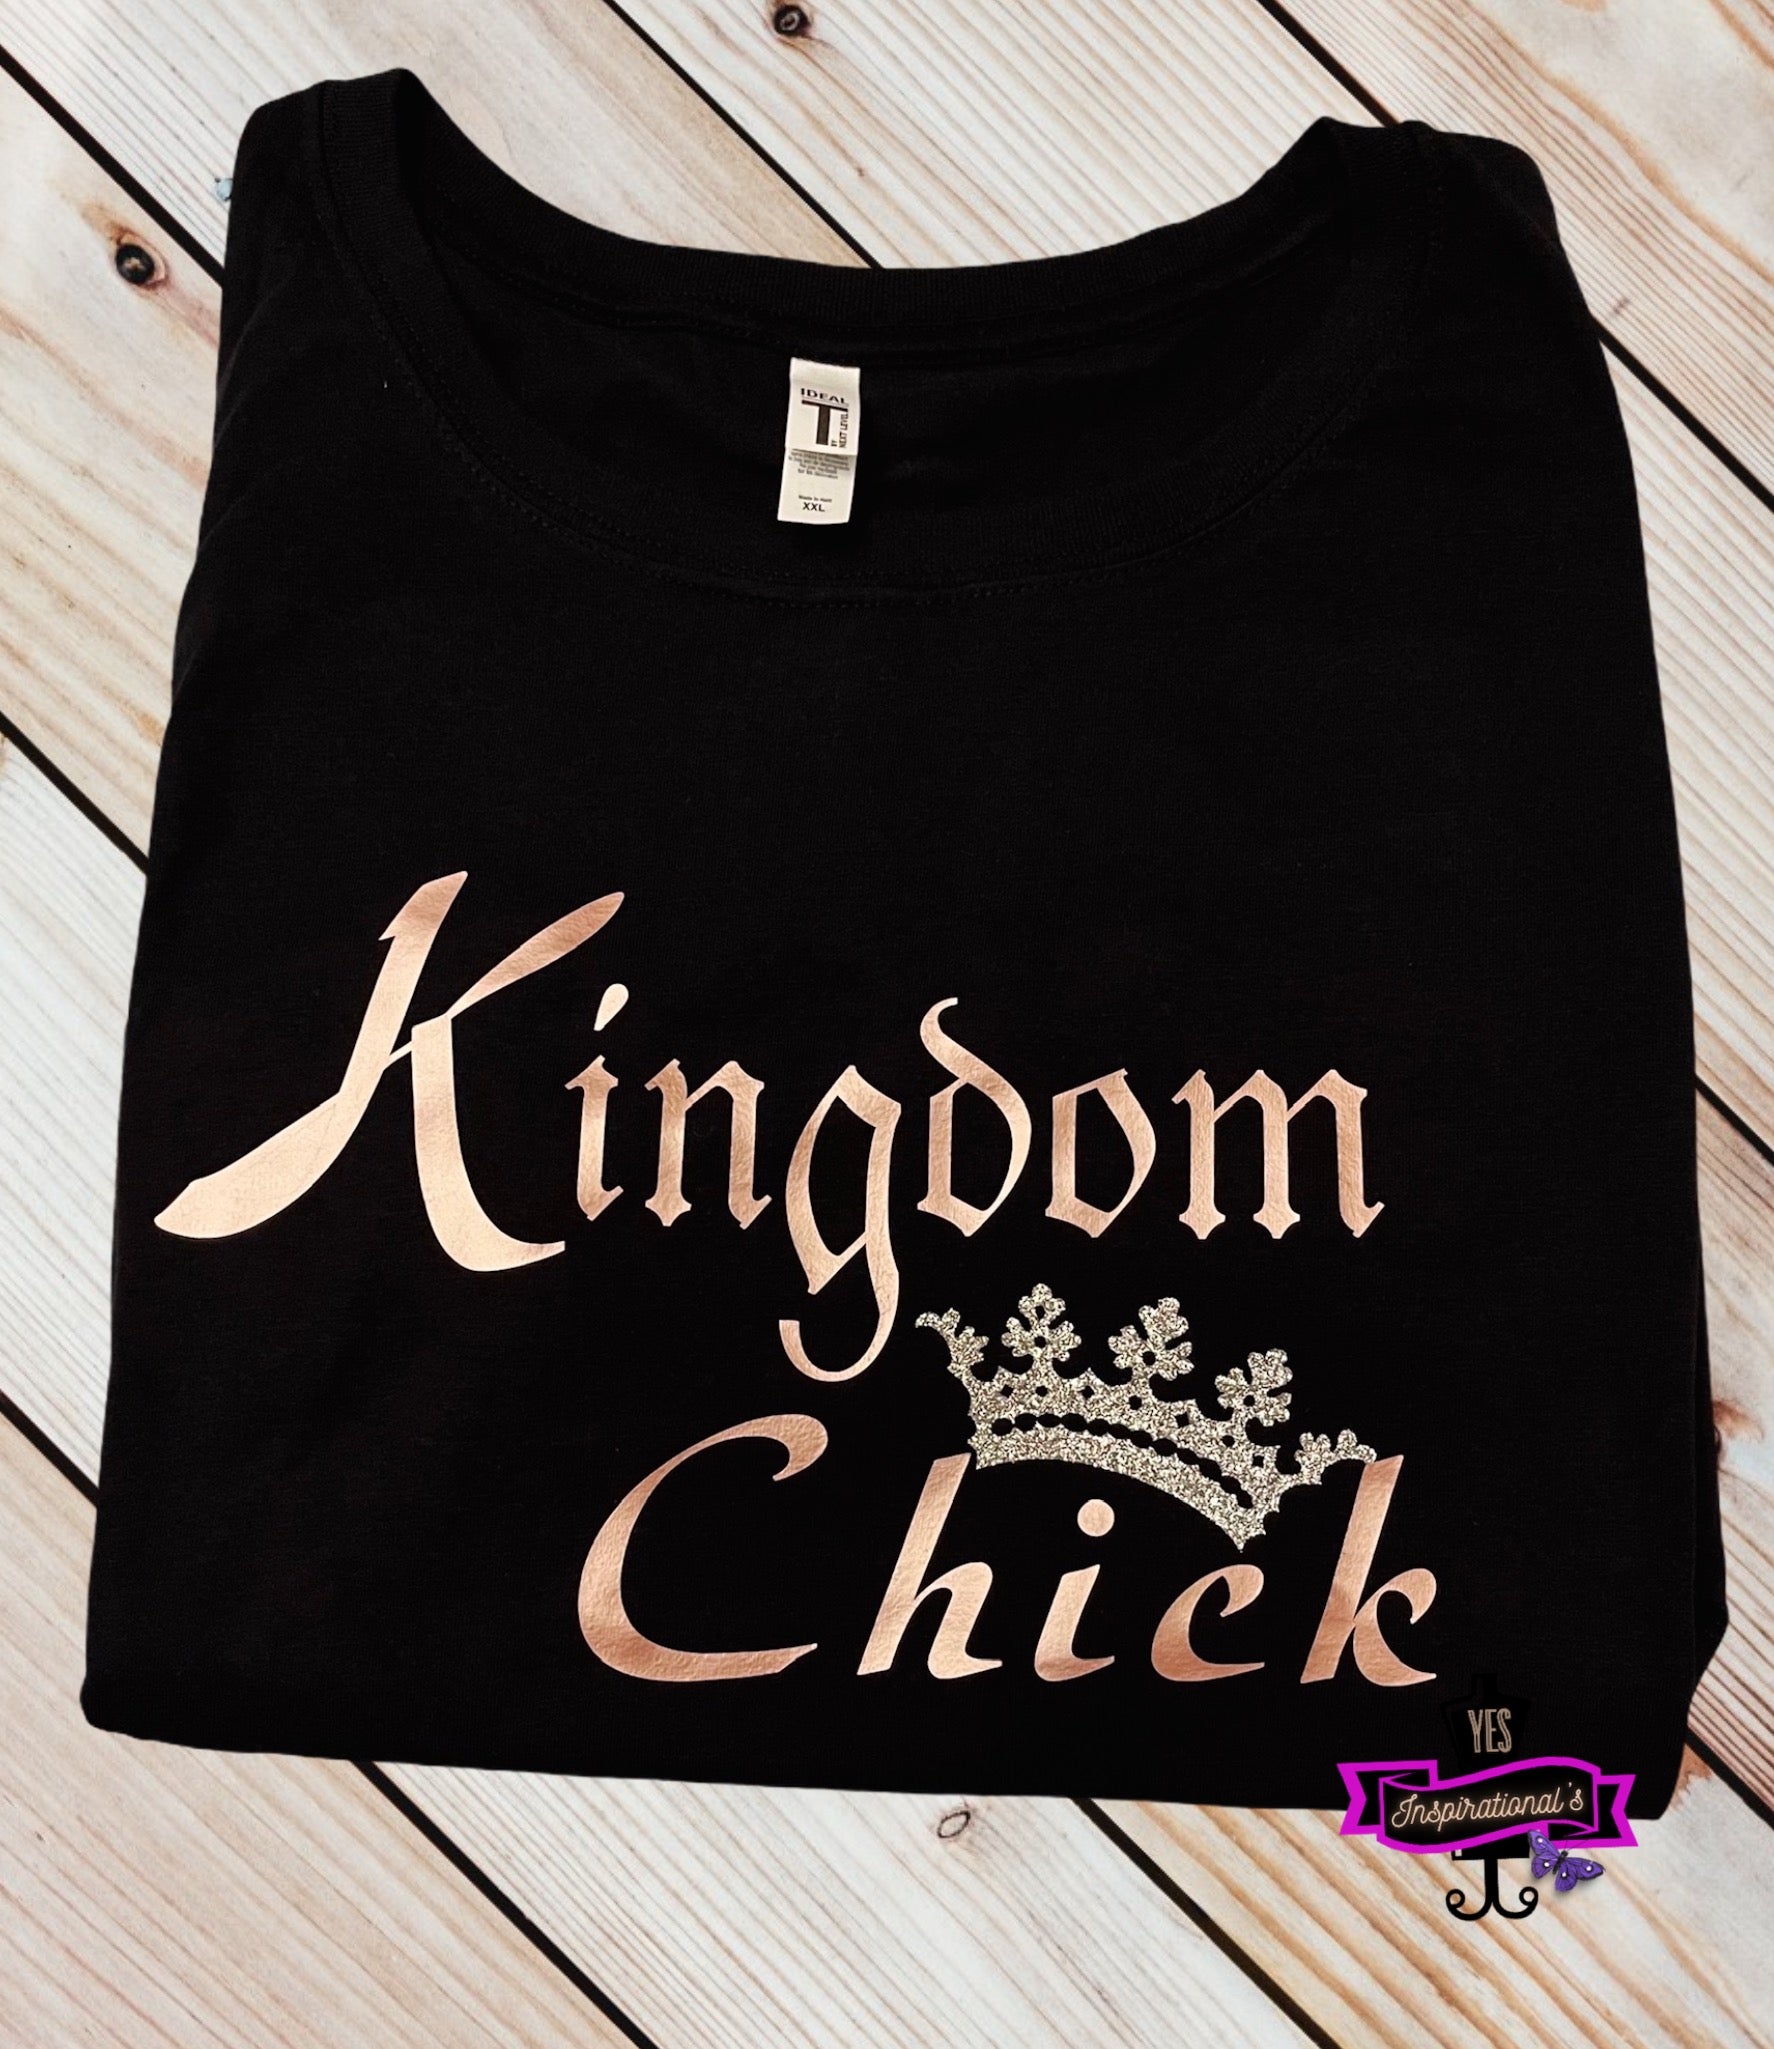 Kingdom Chick